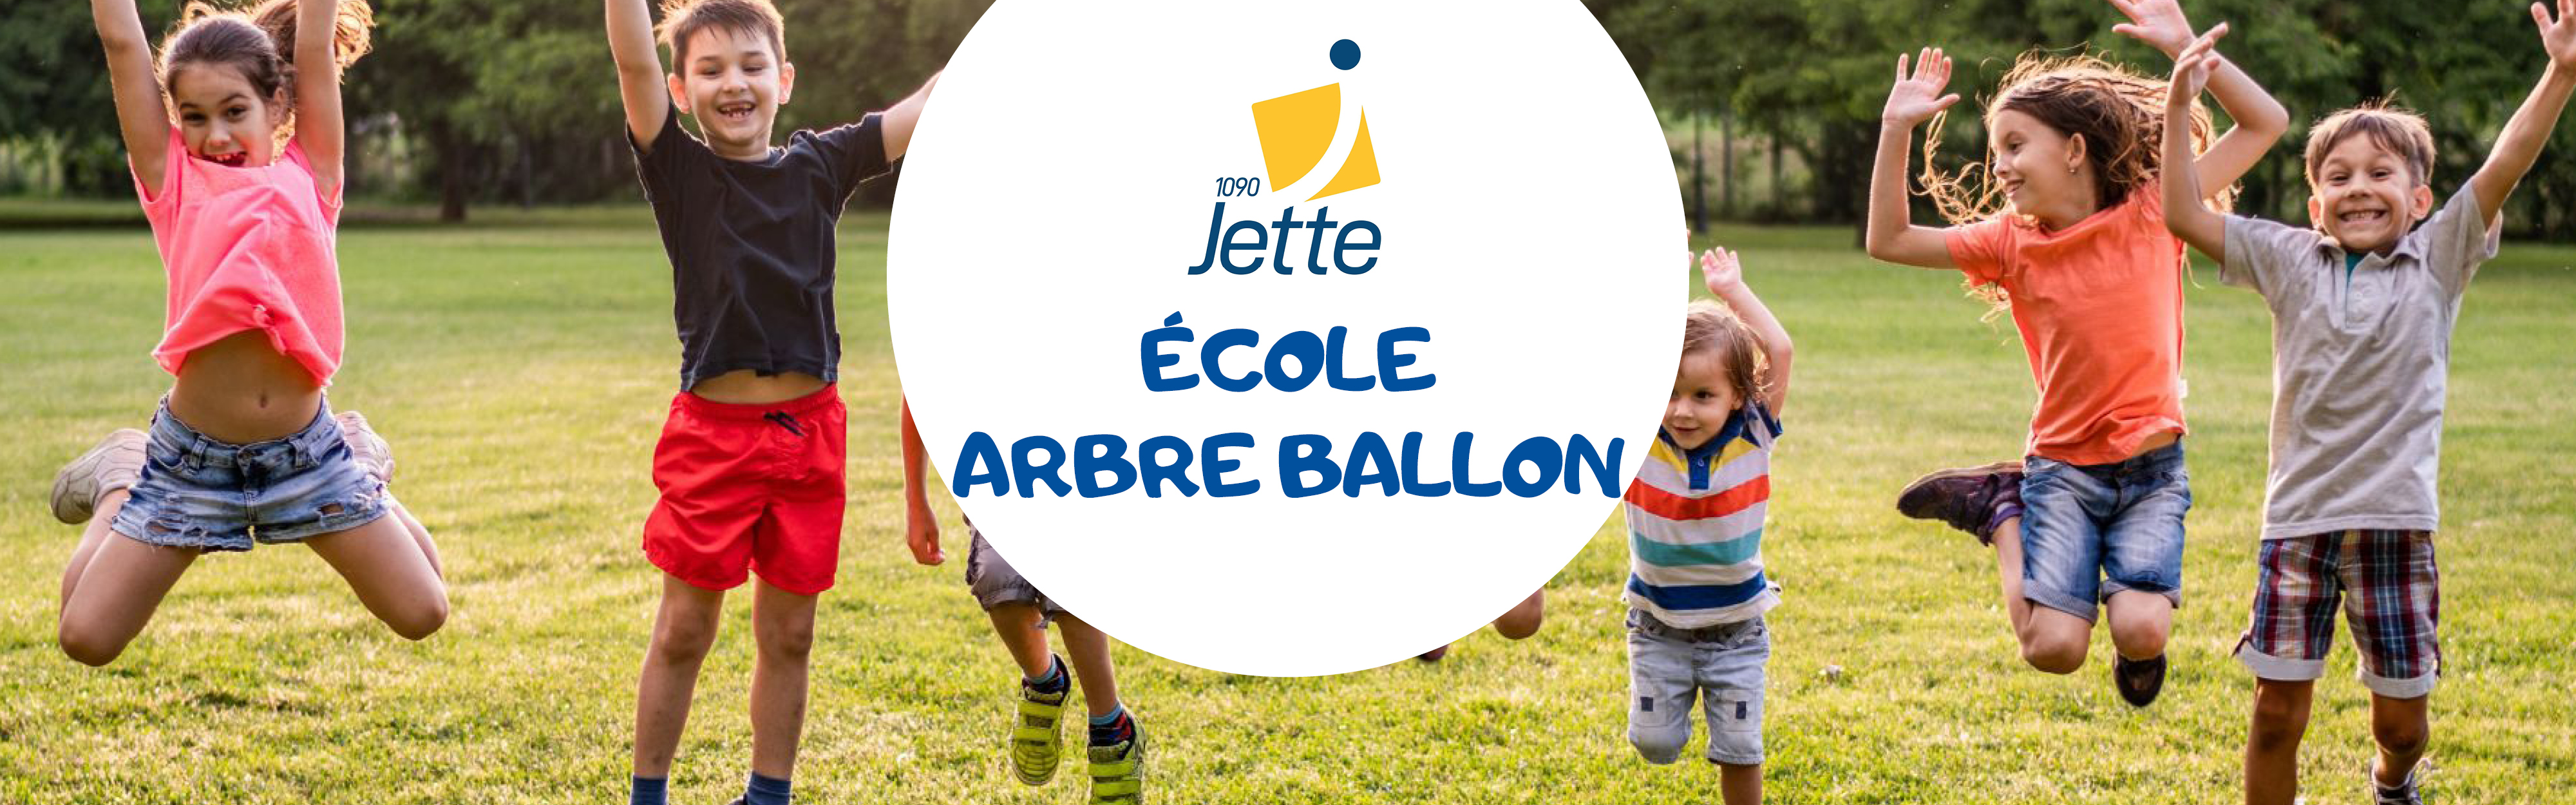 Jette - Ecole Arbre Ballon